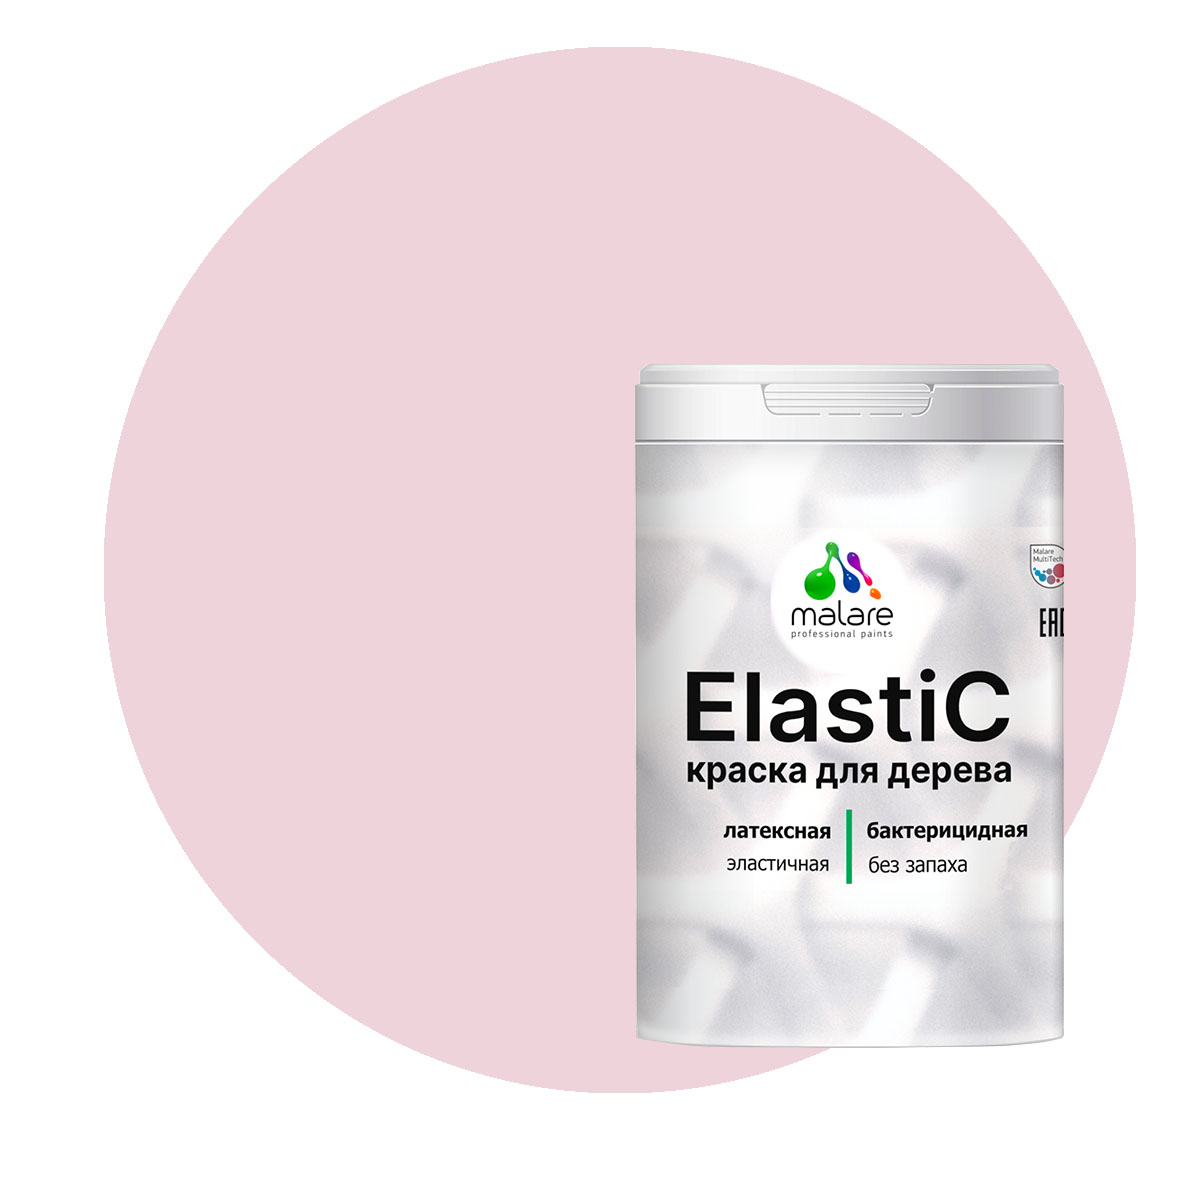 Краска Malare Elastic для деревянных поверхностей, бледно-розовый, 1 кг. помада 310 бледно розовый